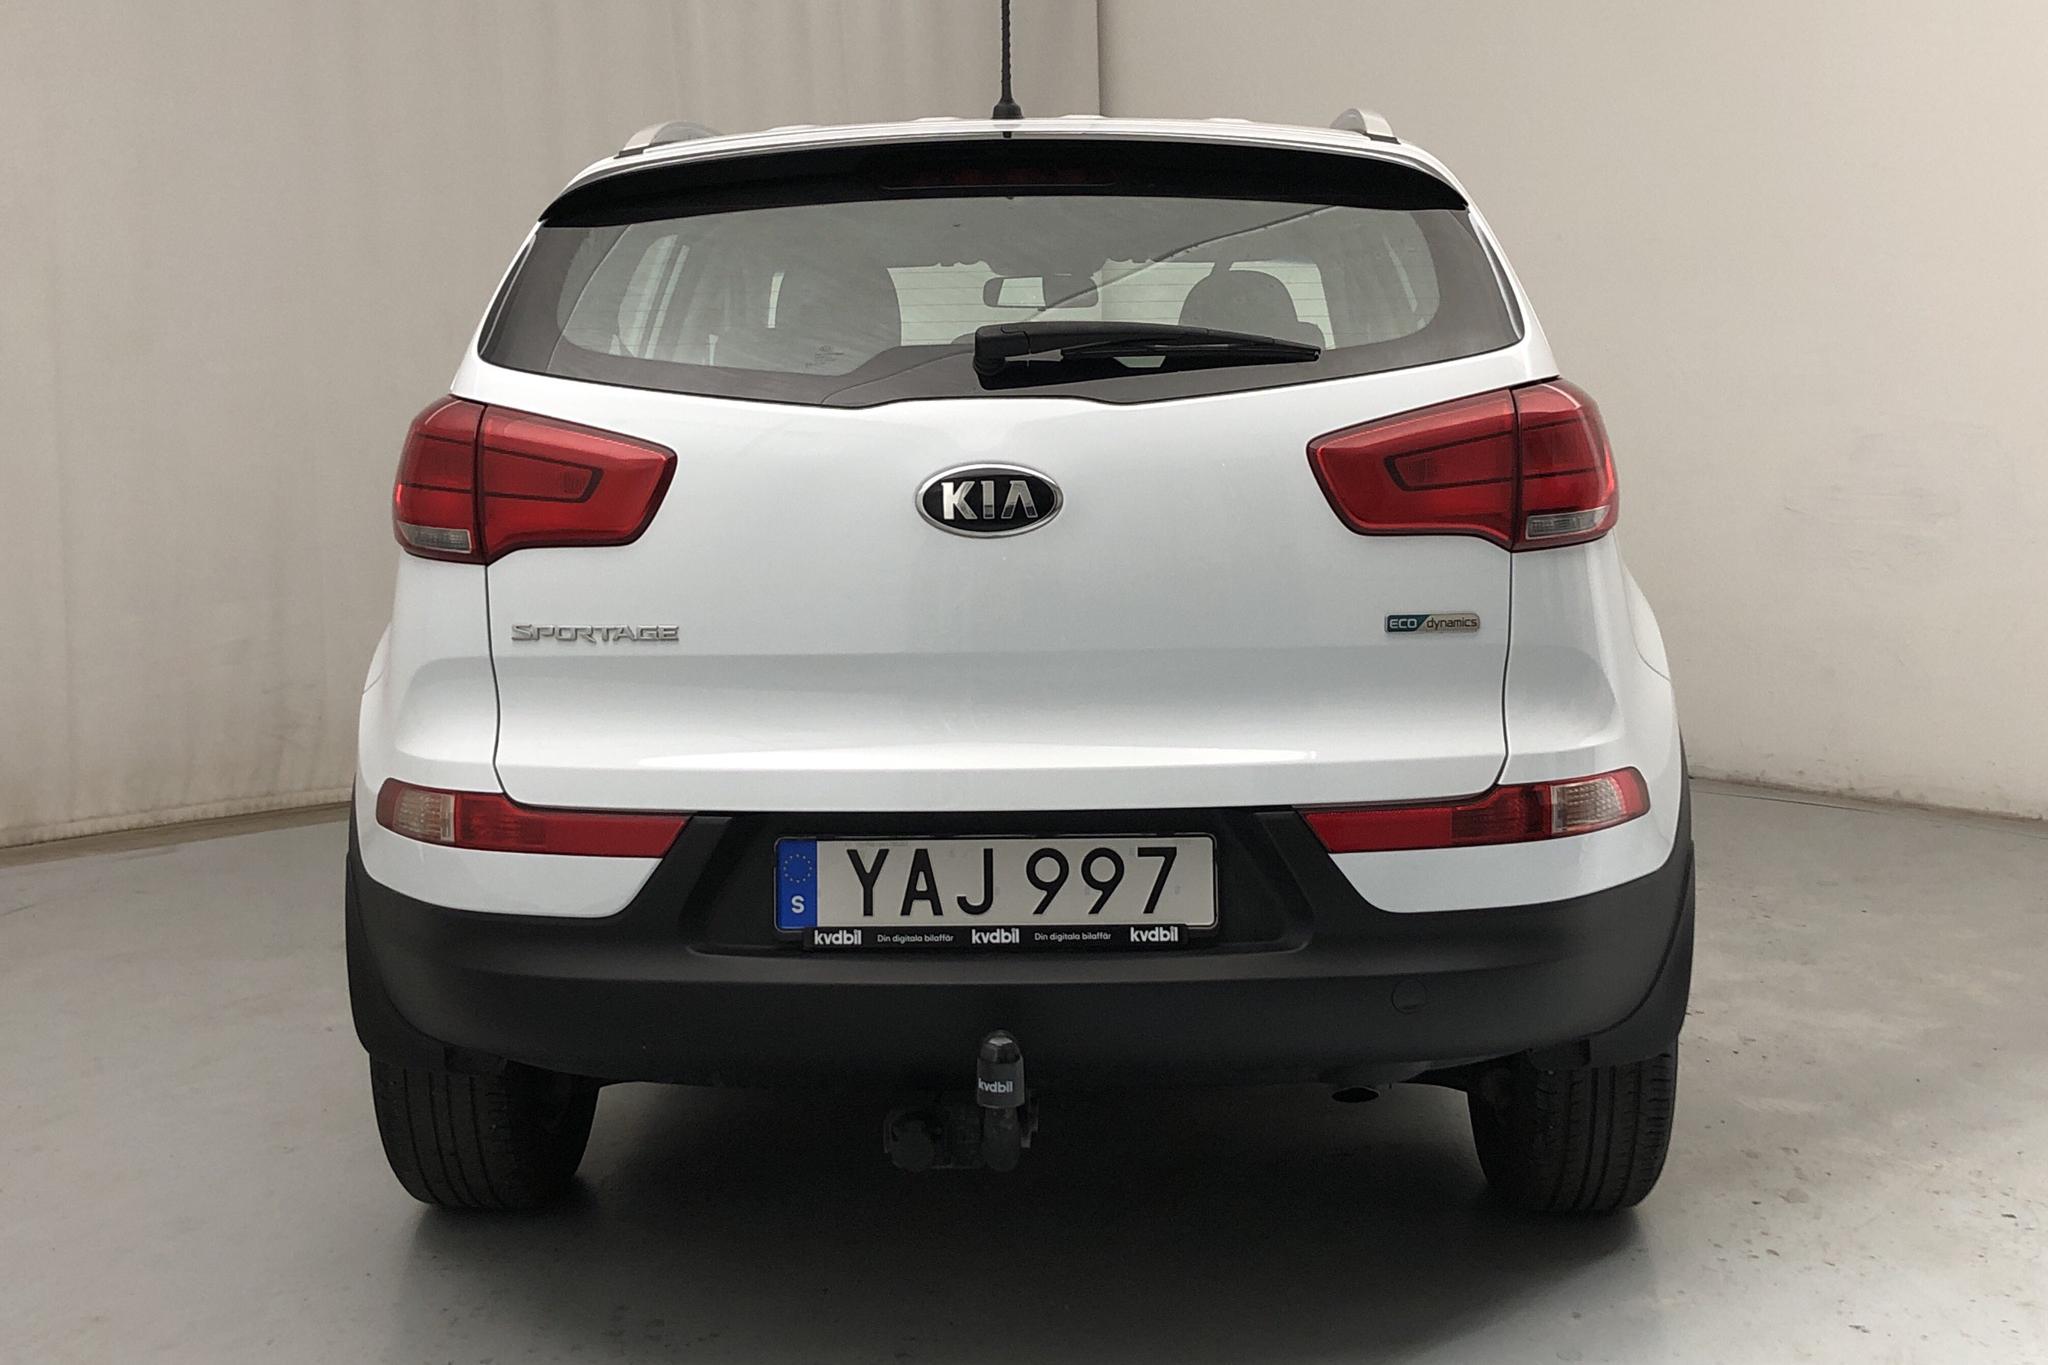 KIA Sportage 1.7 CRDi 2WD (115hk) - 86 420 km - Manual - white - 2015